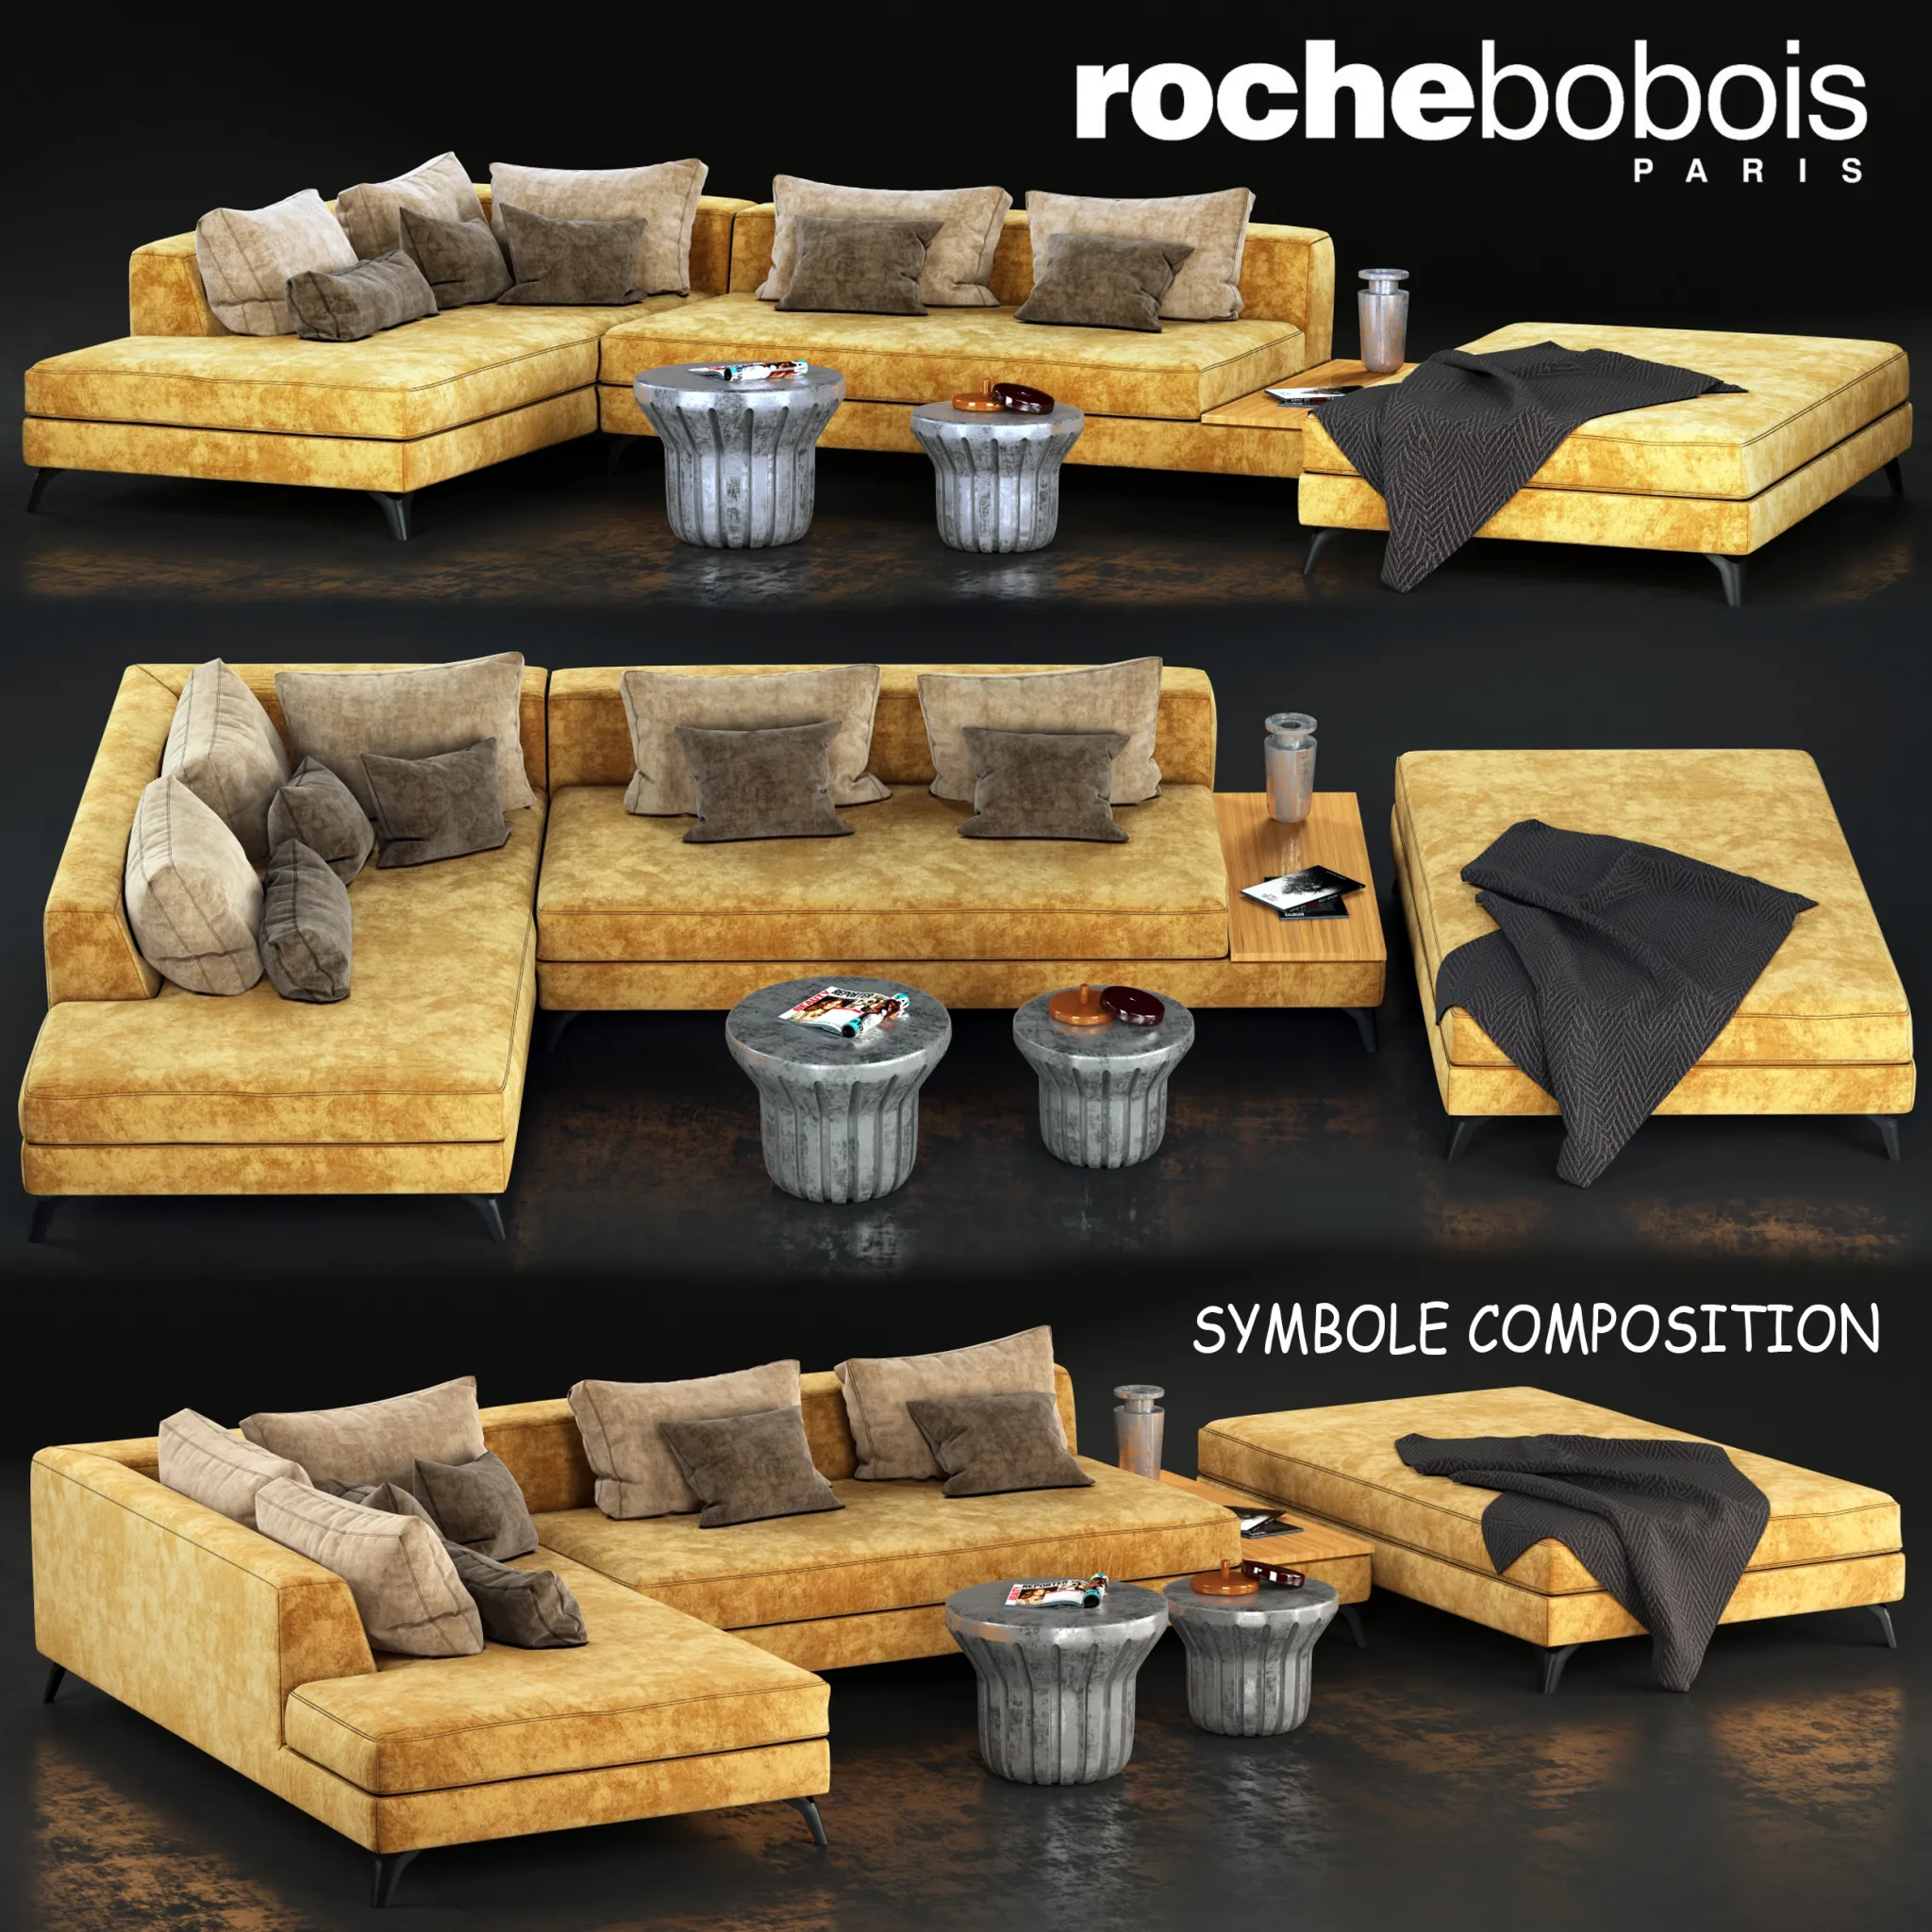 Sofa SYMBOLE roche bobois – 225781